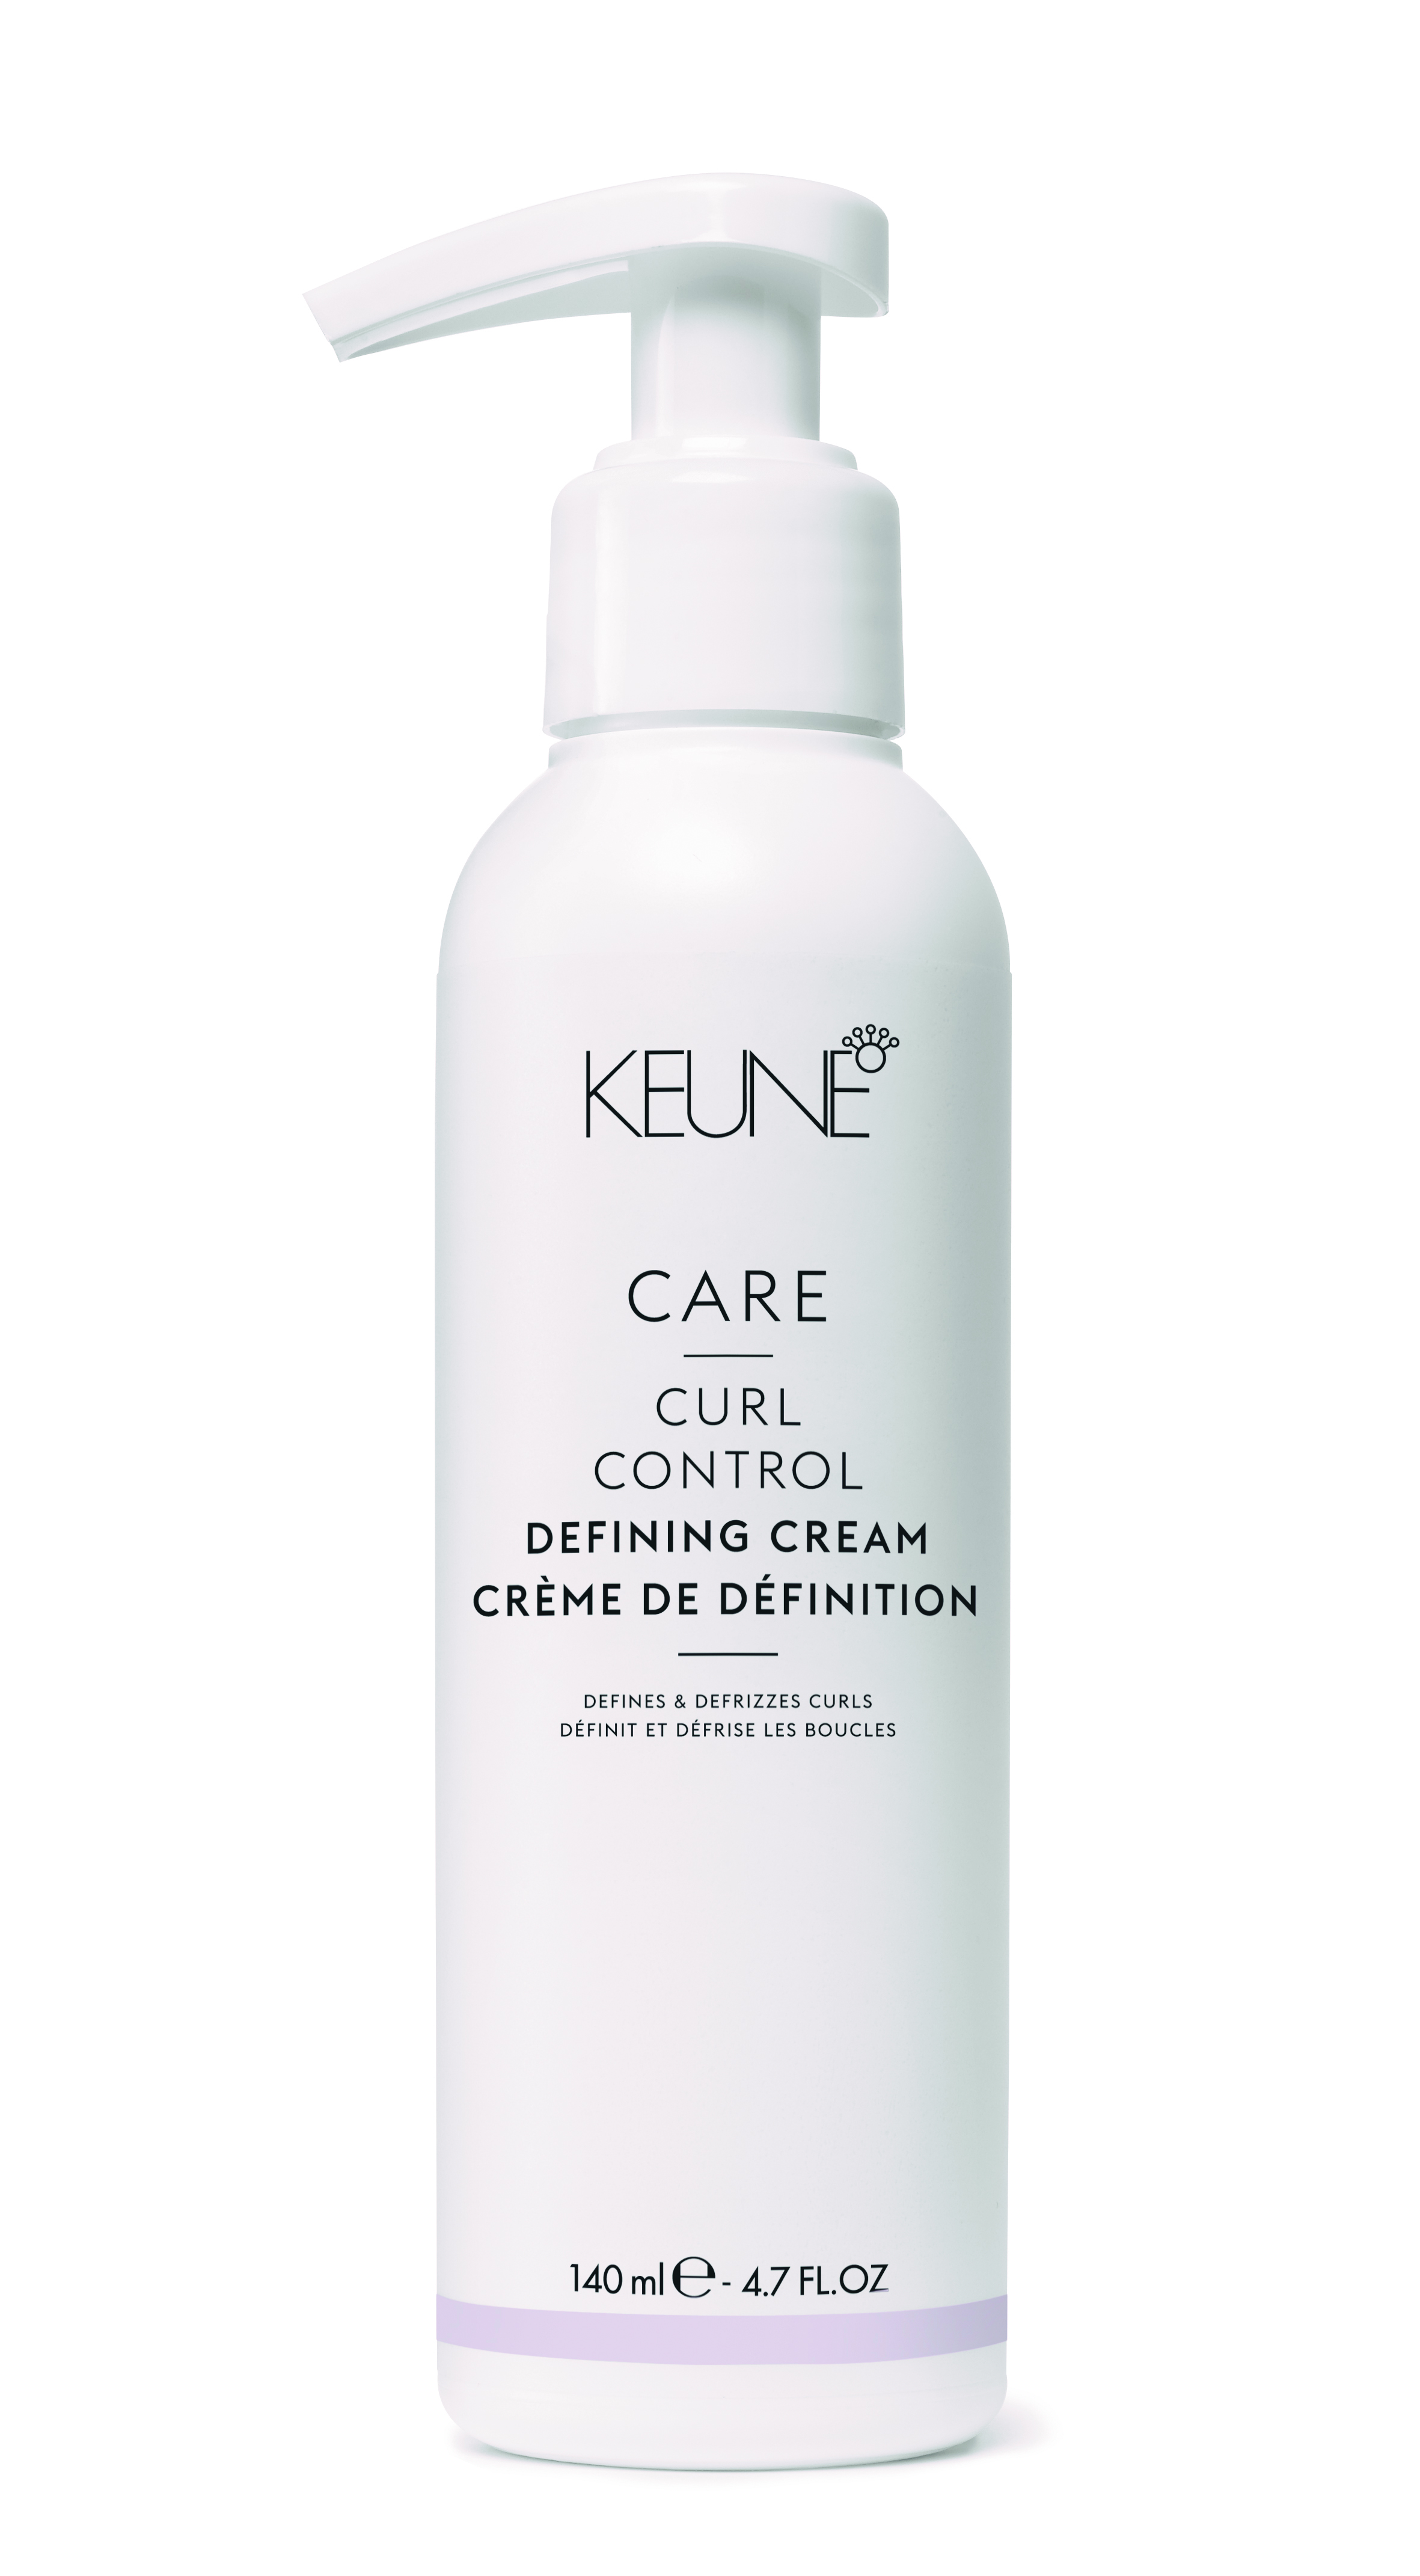 21372 Care curl control Defining cream Highres